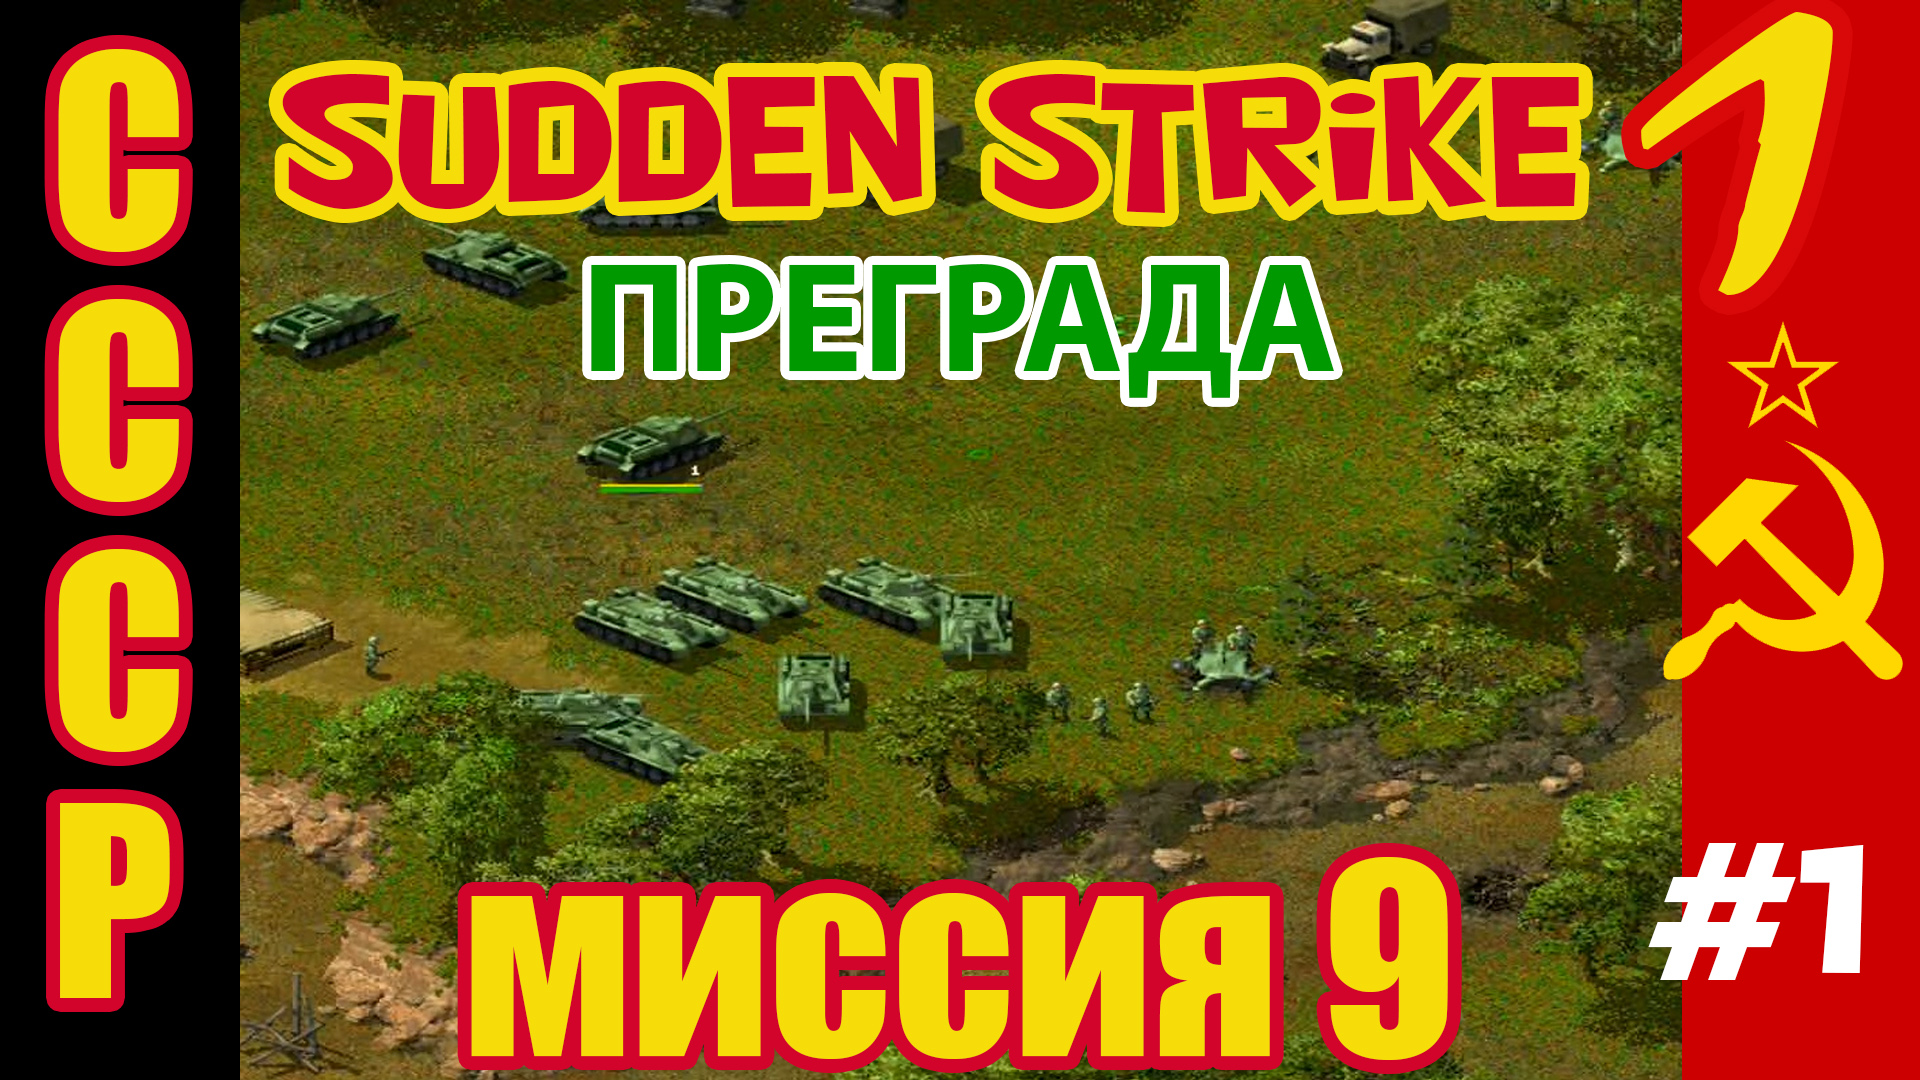 Противостояние 3 ⭐ Sudden Strike ⭐ Прохождение СССР ⭐ Преграда - миссия 9 #1